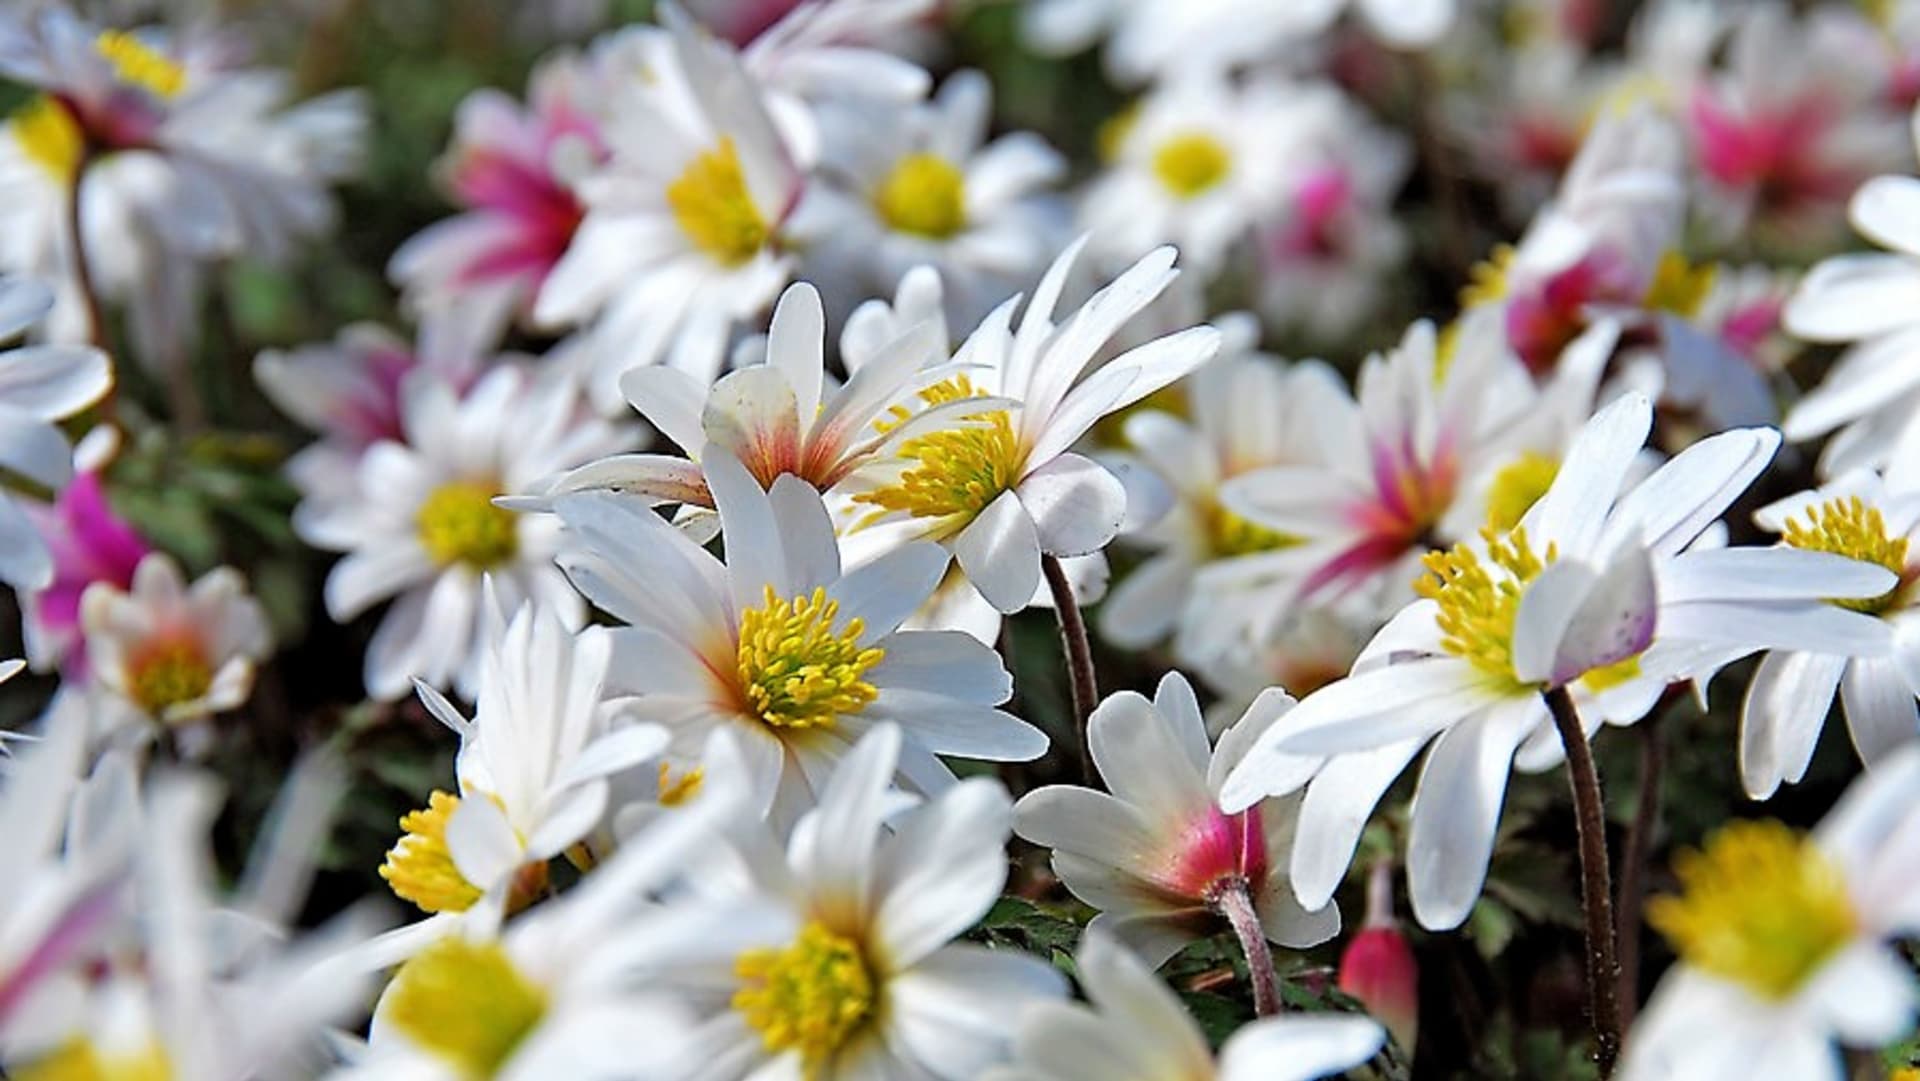 Sasanka rozkošná: kultivar ’White Splendour’ má velké, jasně bílé květy, které se k okrajům vybarvují růžově